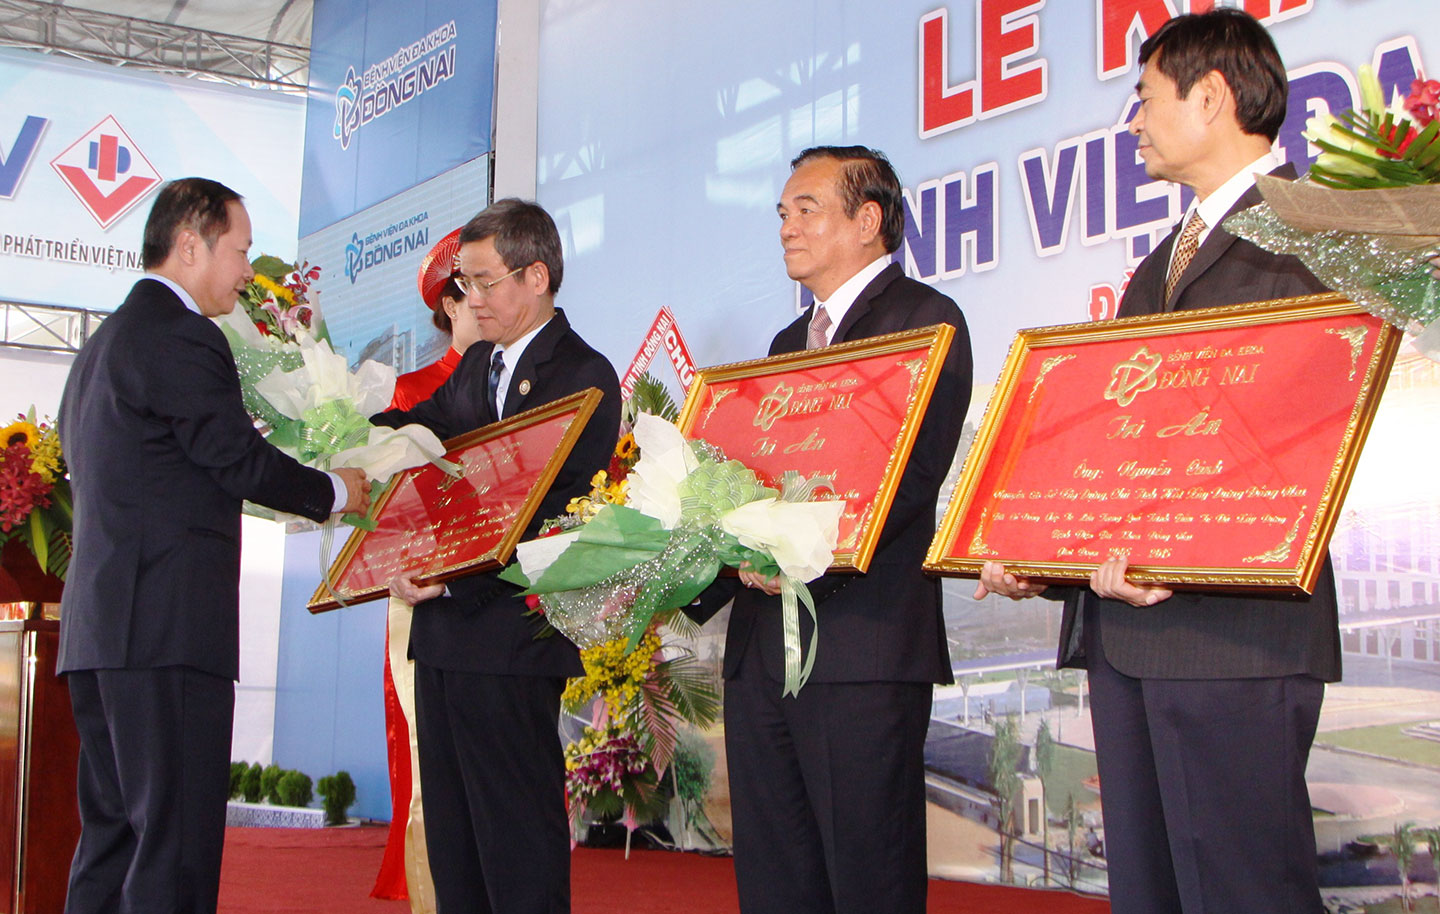 Giám đốc Sở Y tế Nguyễn Minh Hoàn trao bảng tri ân các đồng chí lãnh đạo tỉnh có nhiều đóng góp cho quá trình chỉ đạo xây dựng bệnh viện